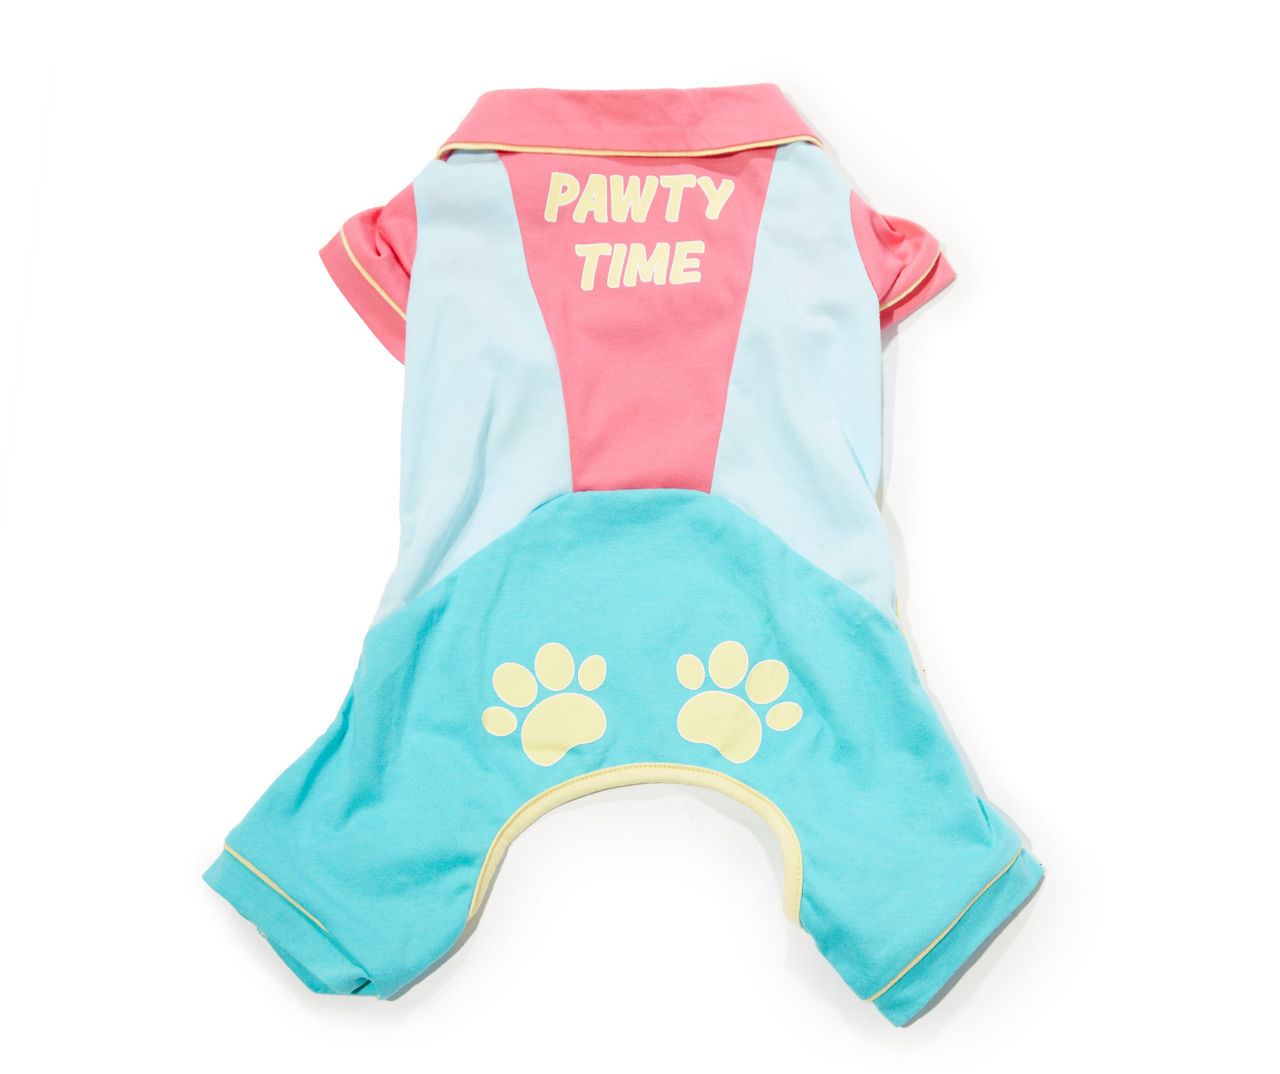 Pet Small "Pawty Time" Blue & Pink Pajamas